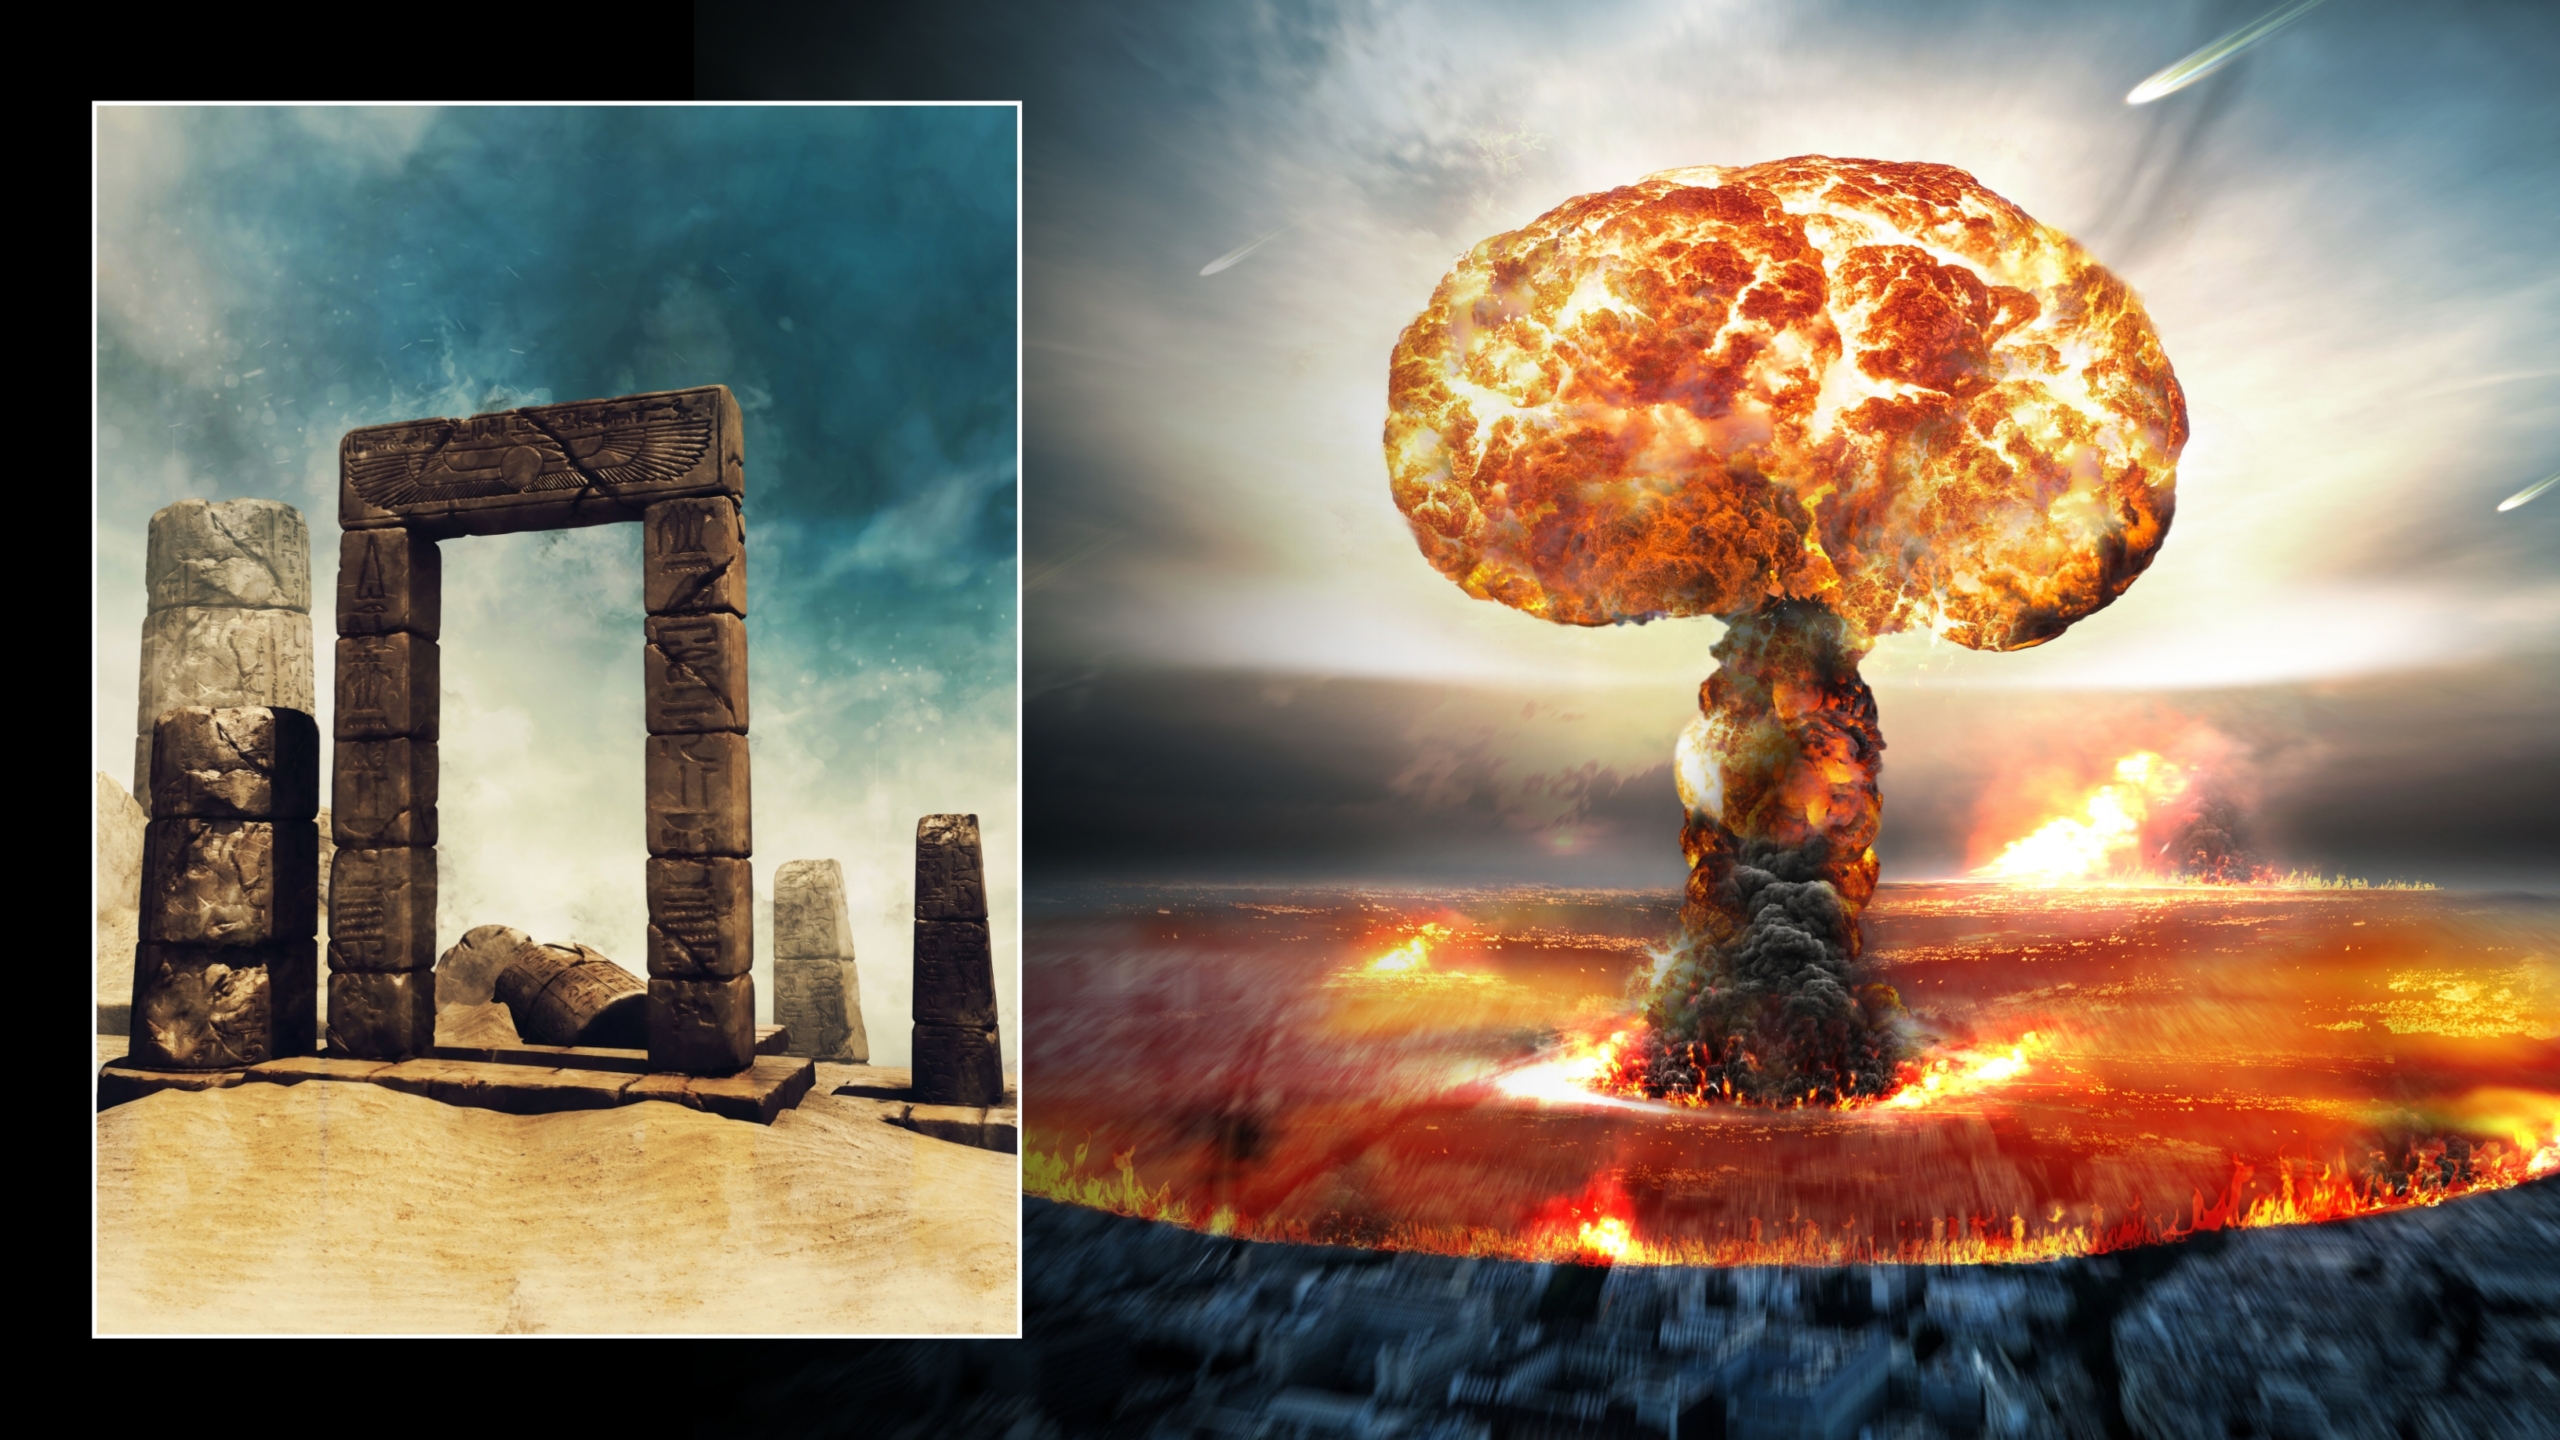 Hình ảnh minh họa về vụ nổ nguyên tử và tàn tích cổ đại trên sa mạc. © Tín dụng hình ảnh: Obsidianfantacy & Razvan lonut Dragomirescu | Được cấp phép từ DreamsTime.com (Ảnh gốc sử dụng cho mục đích biên tập / thương mại)